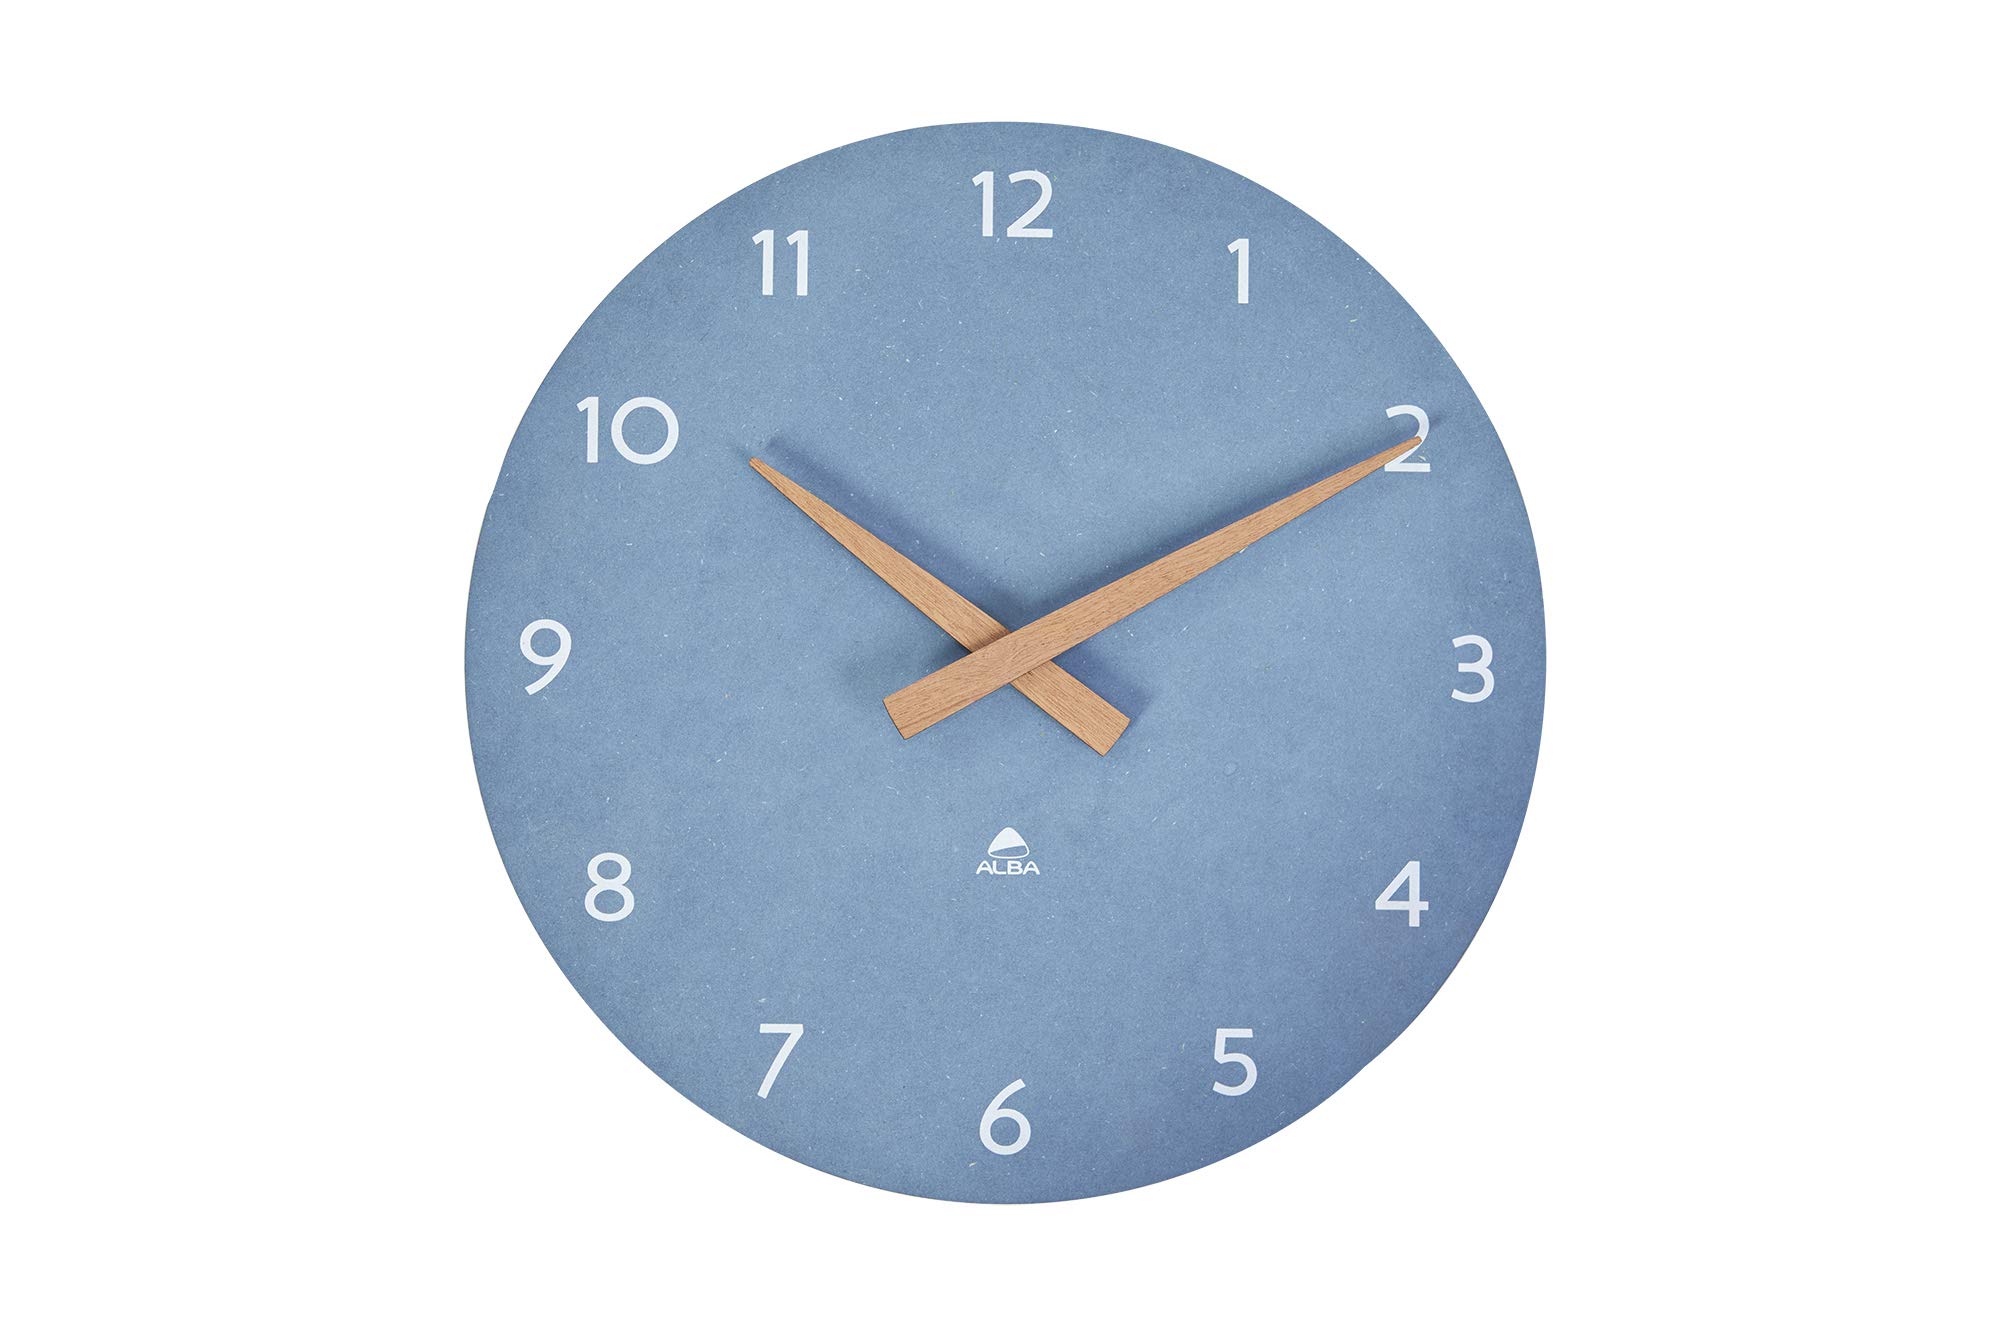 Orologio da parete HorMilena - D 30 cm - blu / legno - Alba